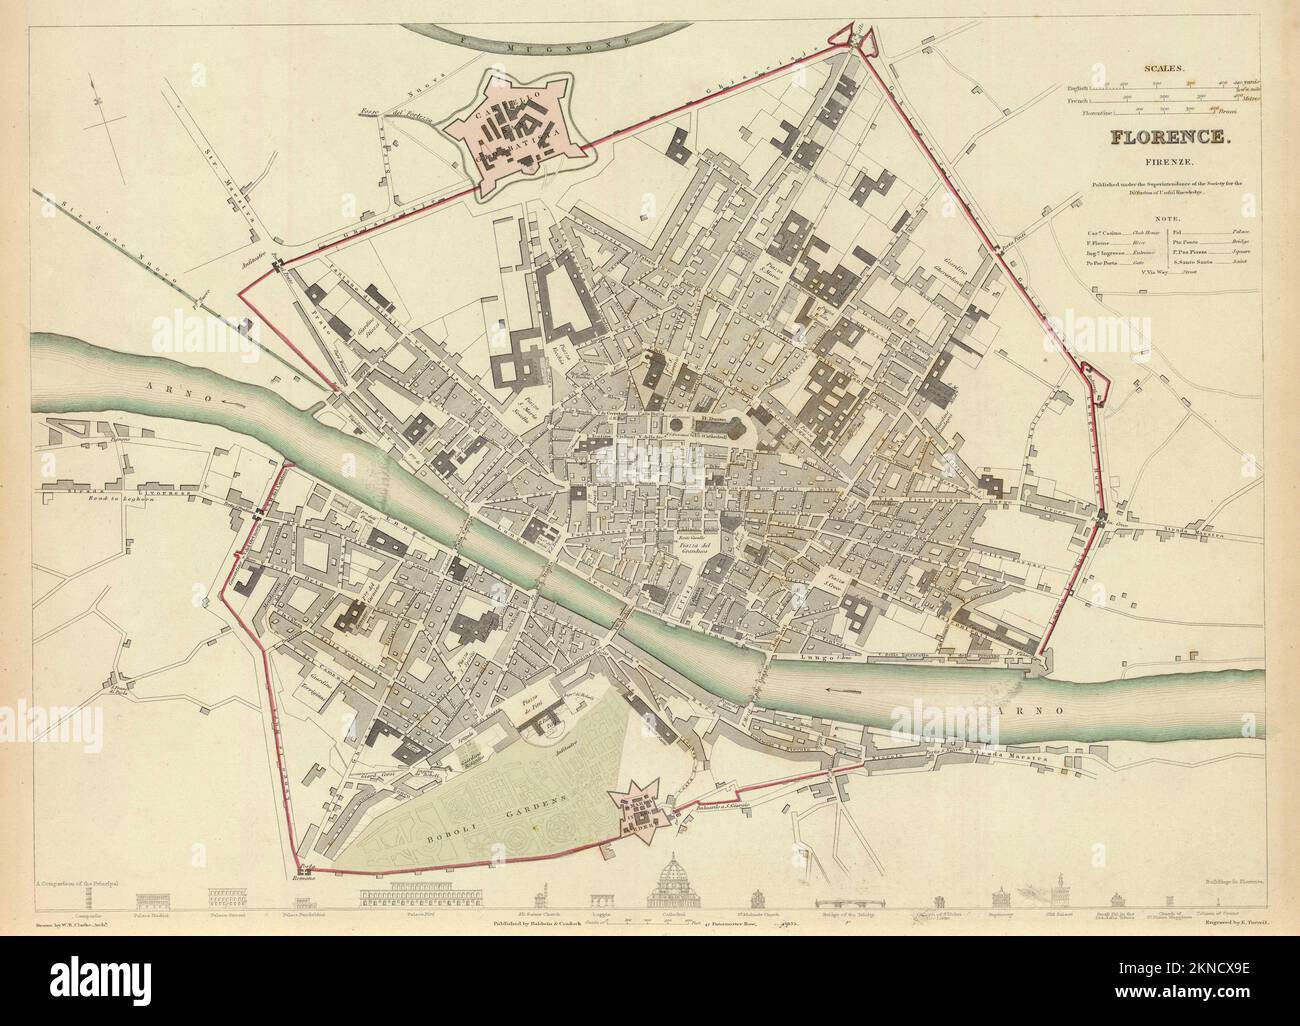 Plan de ville vintage de Florence et de la région autour de lui de 16th-18th siècle. Les cartes sont magnifiquement illustrées à la main et gravées le montrant à l'époque. Banque D'Images